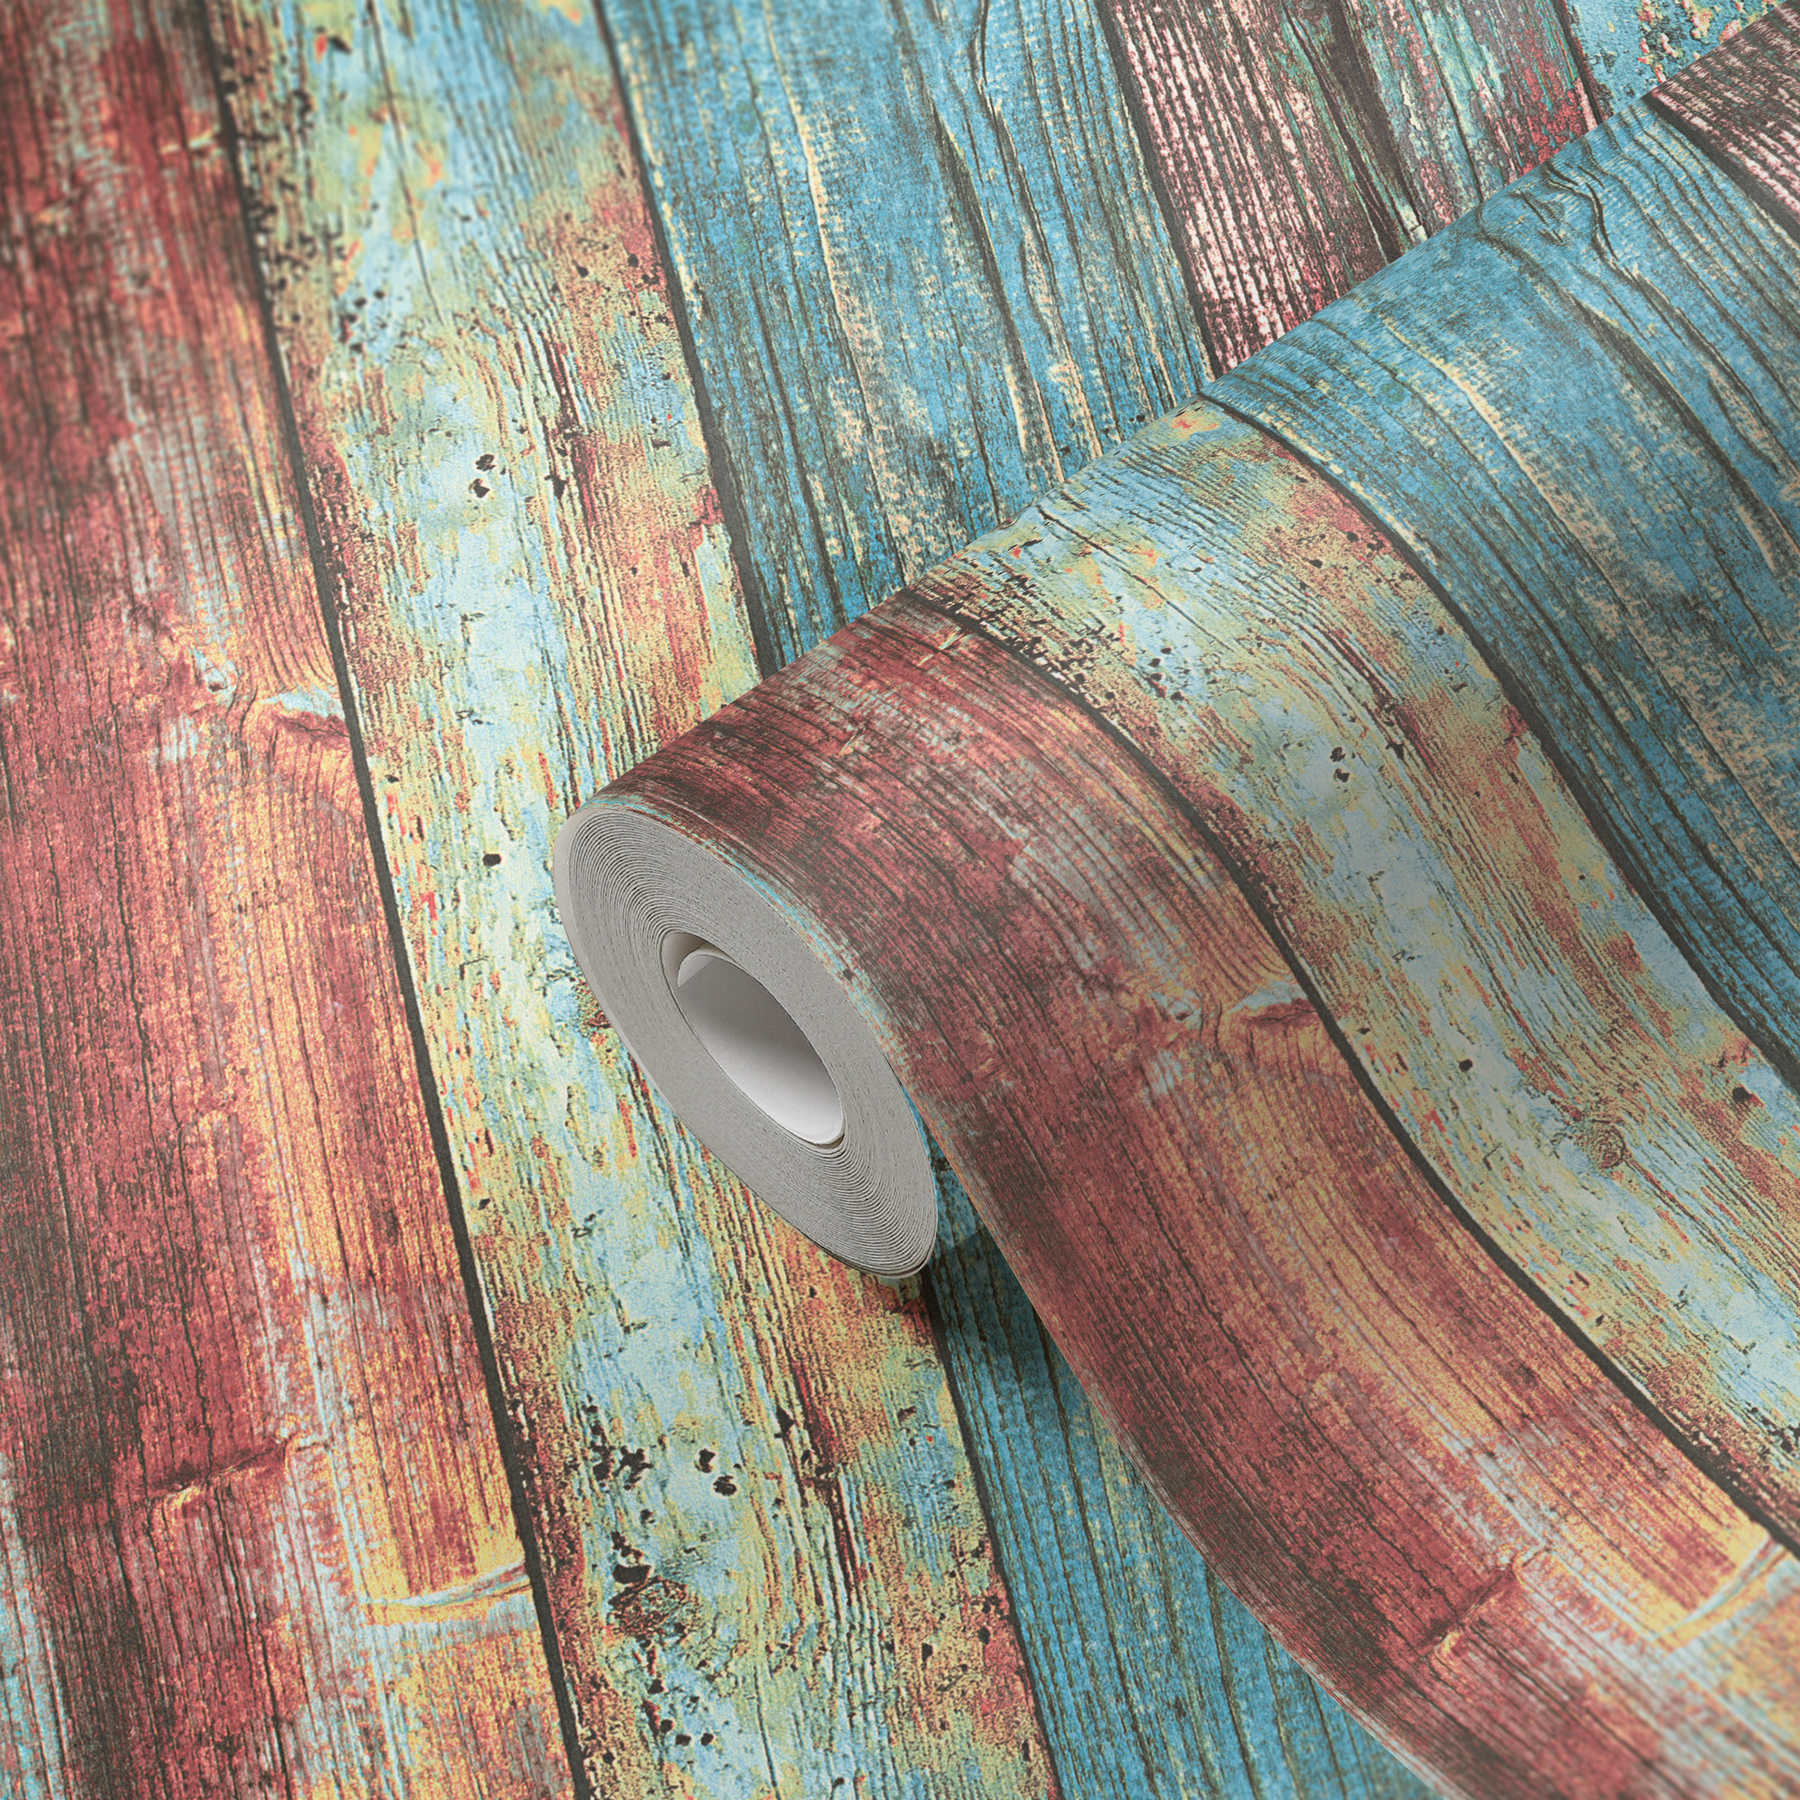             Carta da parati colorata in legno in stile Shabby Chic con motivo a quadri - blu, rosso, marrone
        